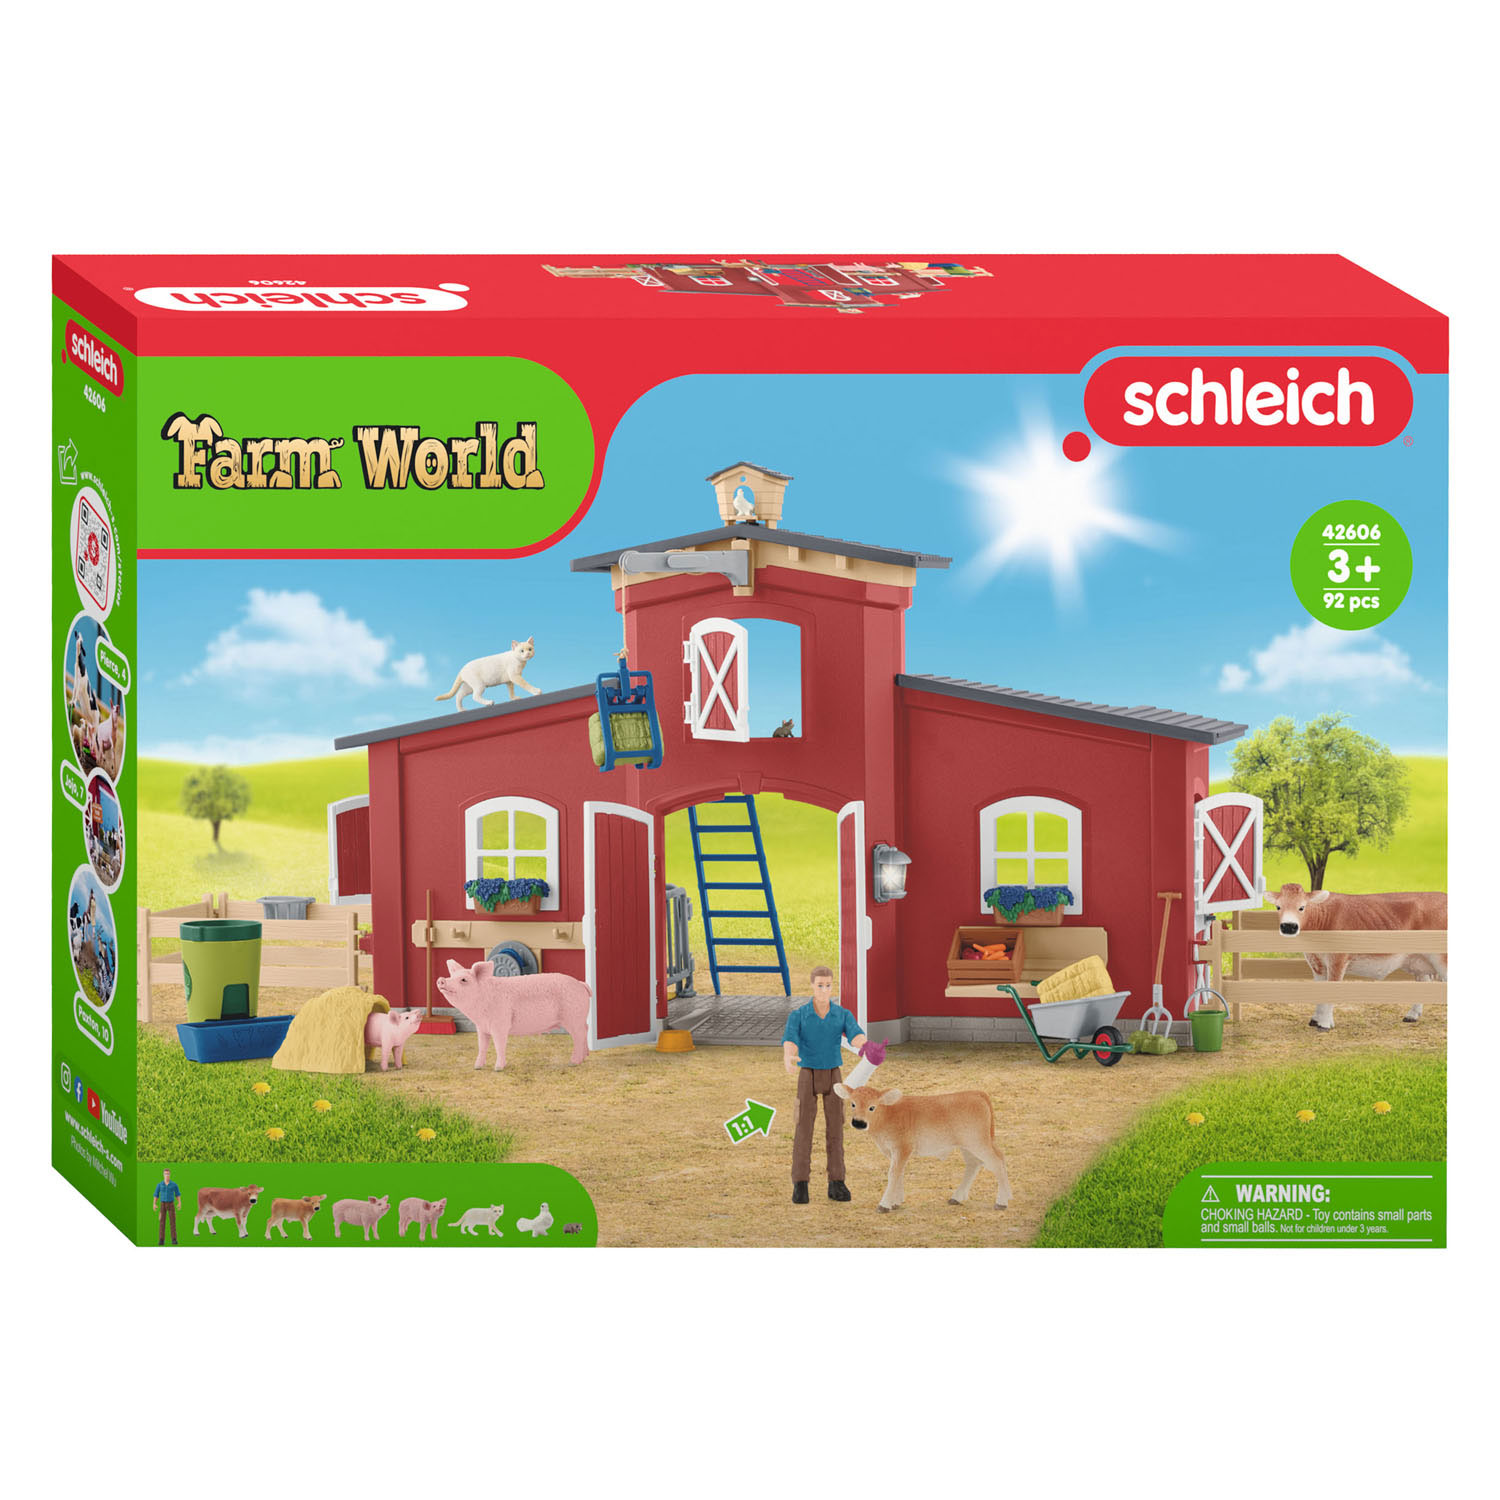 Schleich FARM WORLD Großer Stall Rot 42606